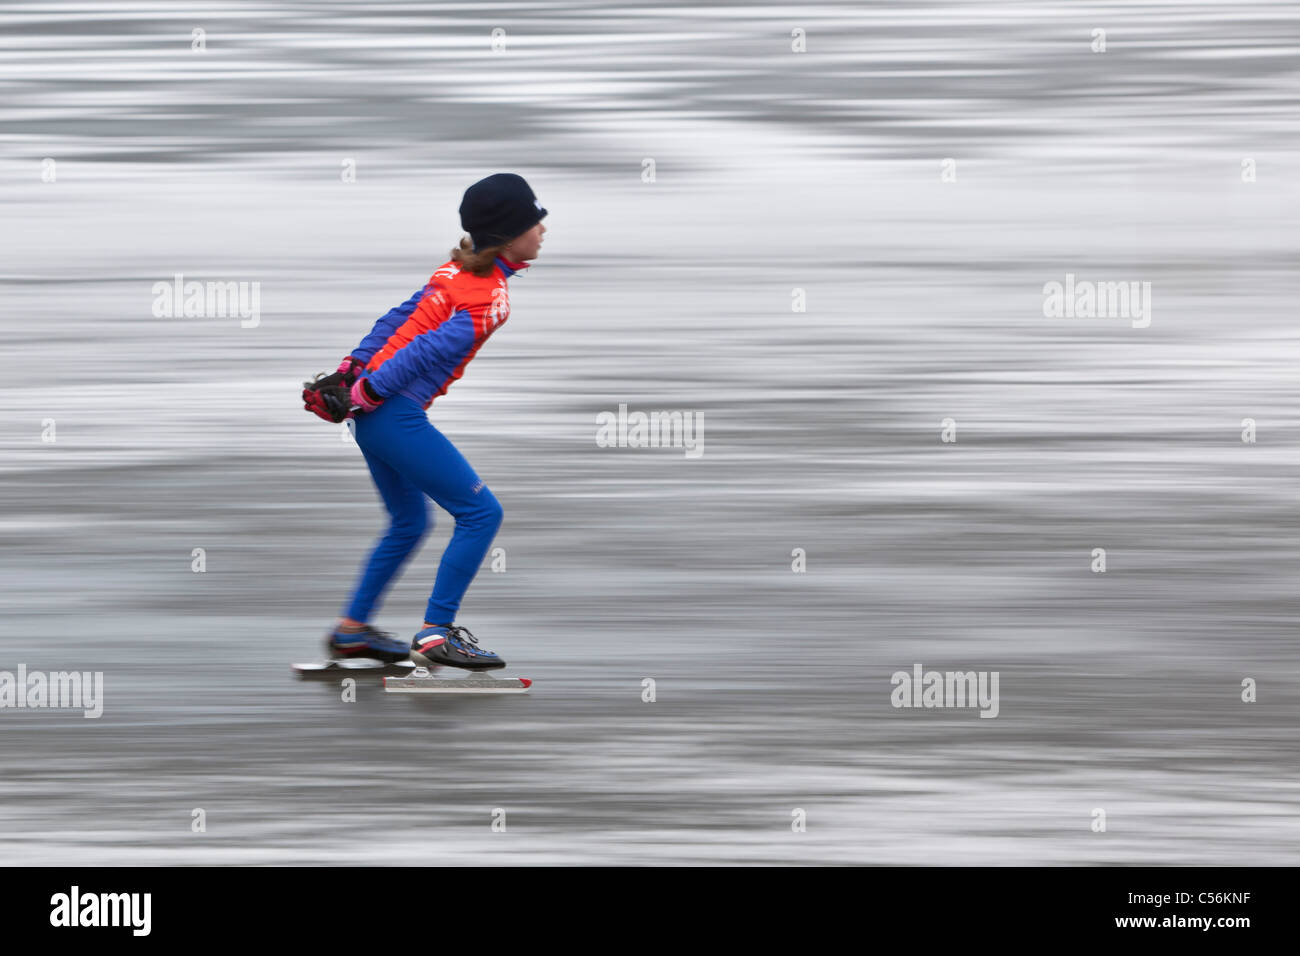 Los Países Bajos, Ankeveen. Chica patinar sobre hielo. Motion borrosa. Foto de stock